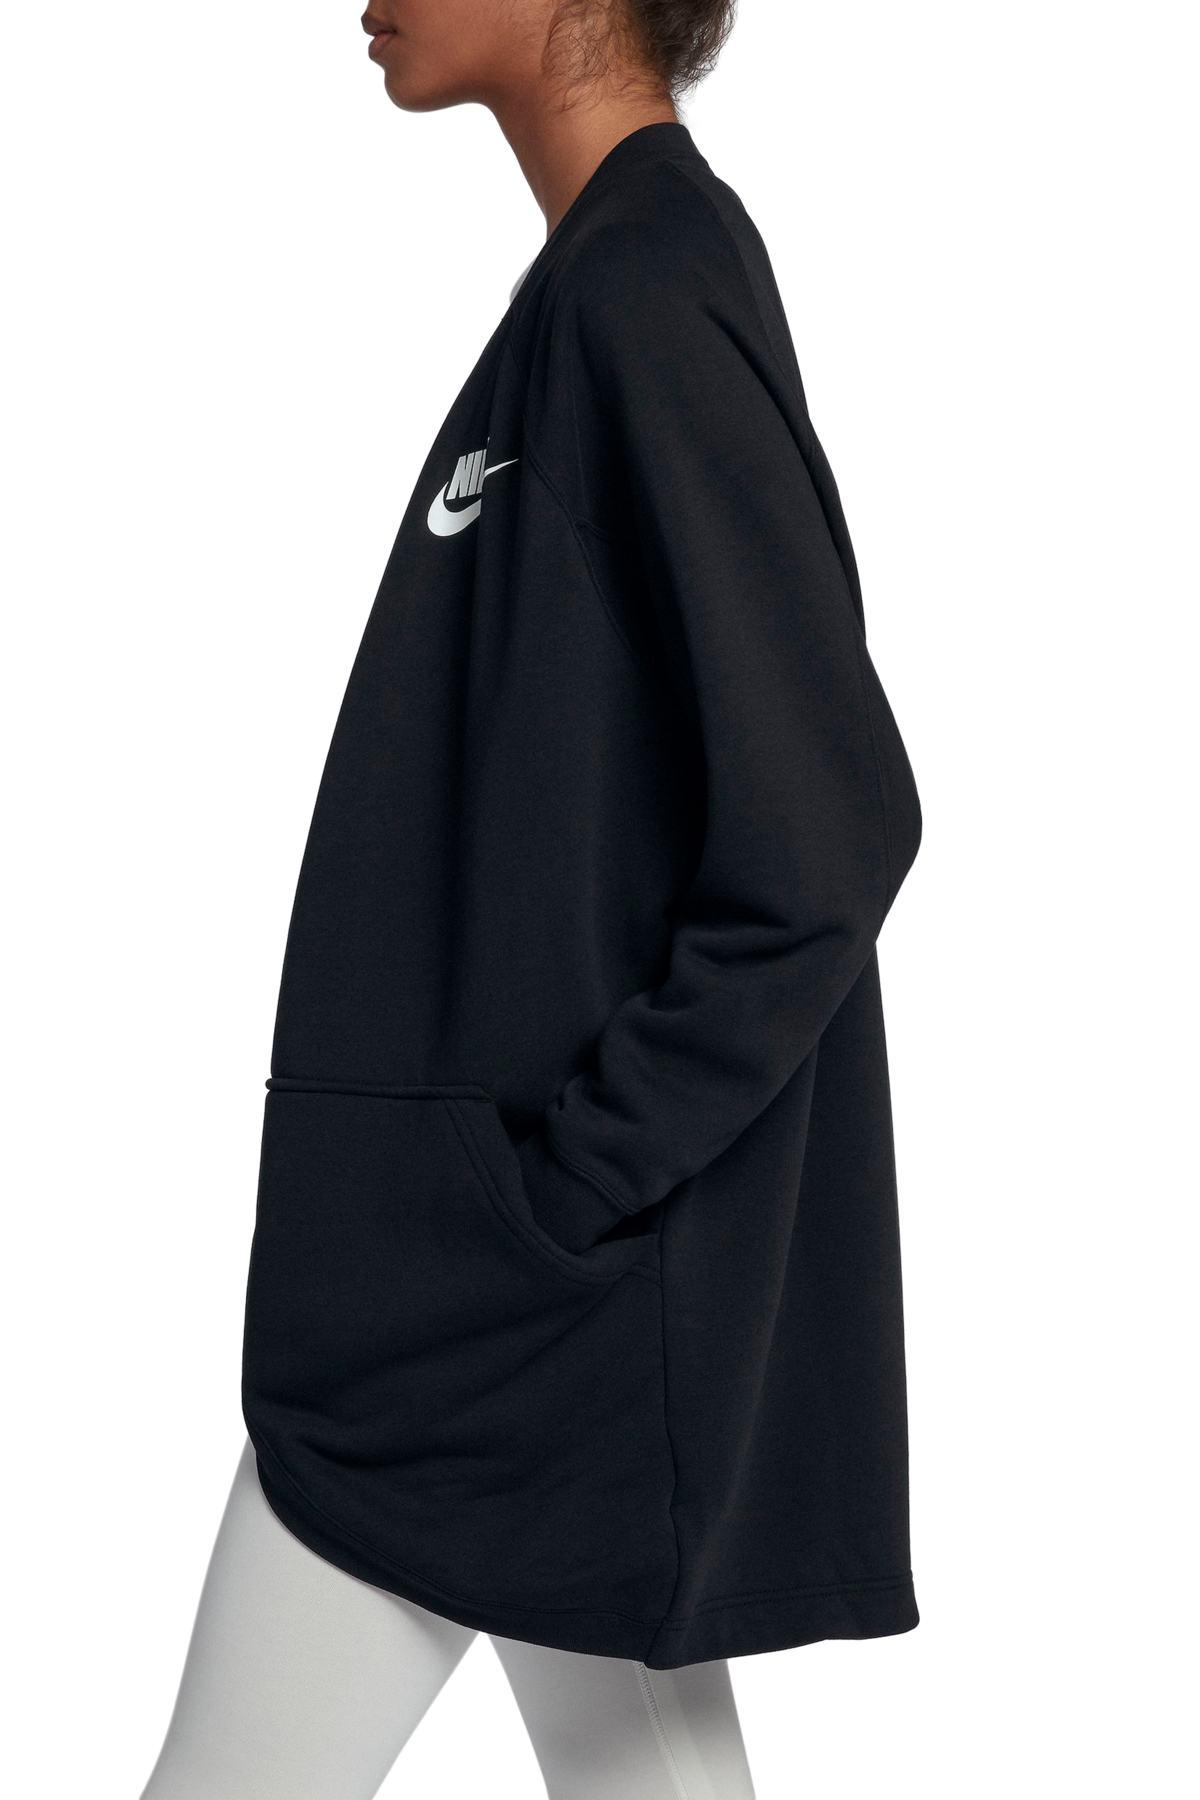 Nike Sportswear Rally Relaxed Fleece in Black | Lyst